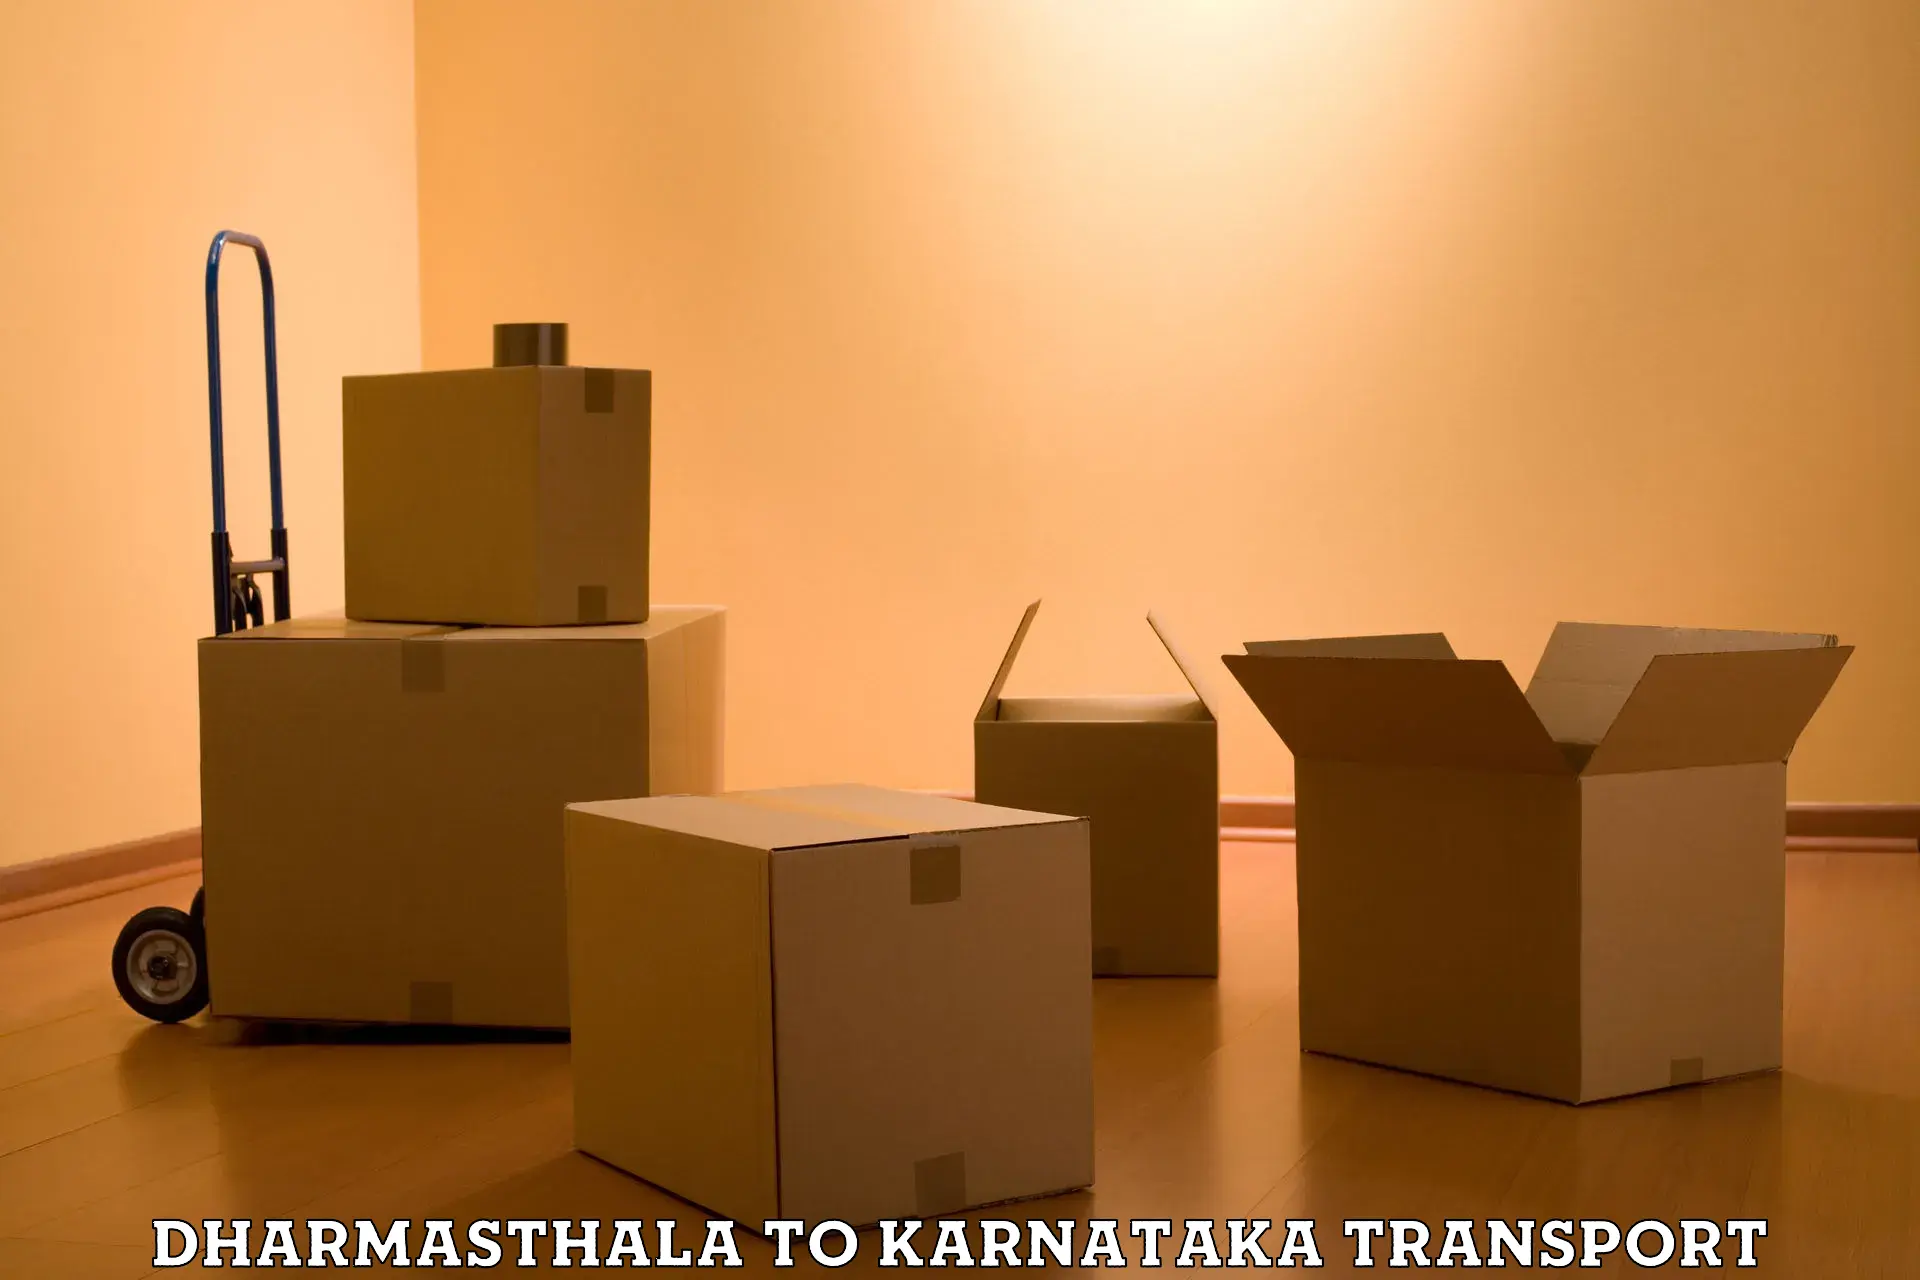 Express transport services Dharmasthala to Karnataka